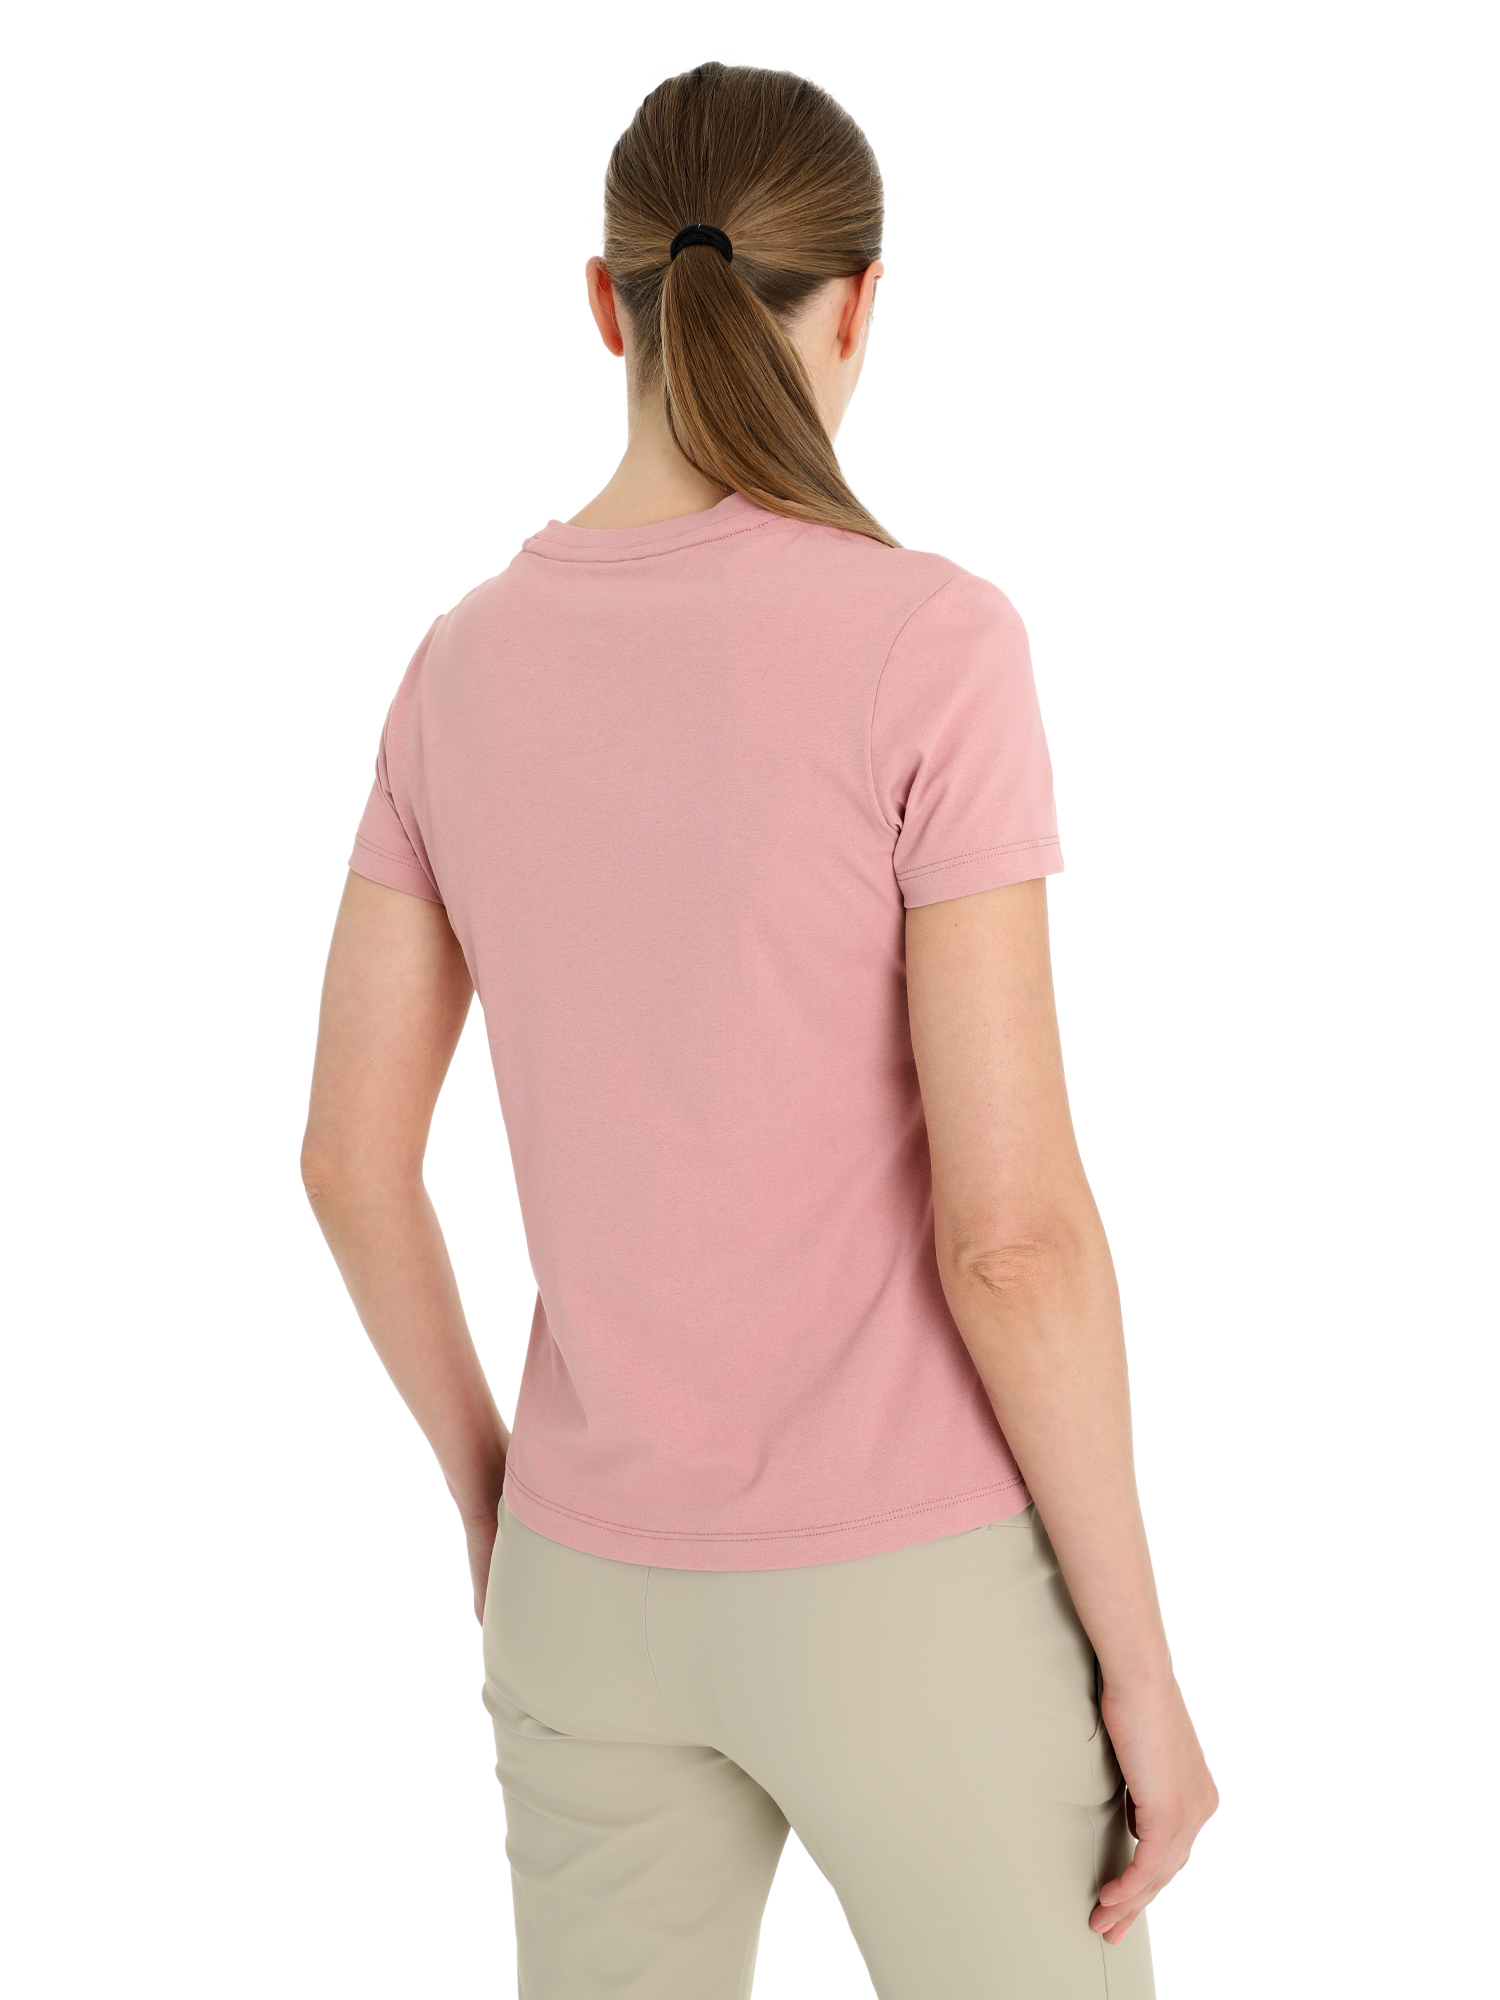 Футболка Toread Women's short-sleeve T-shirt Apricot pollen